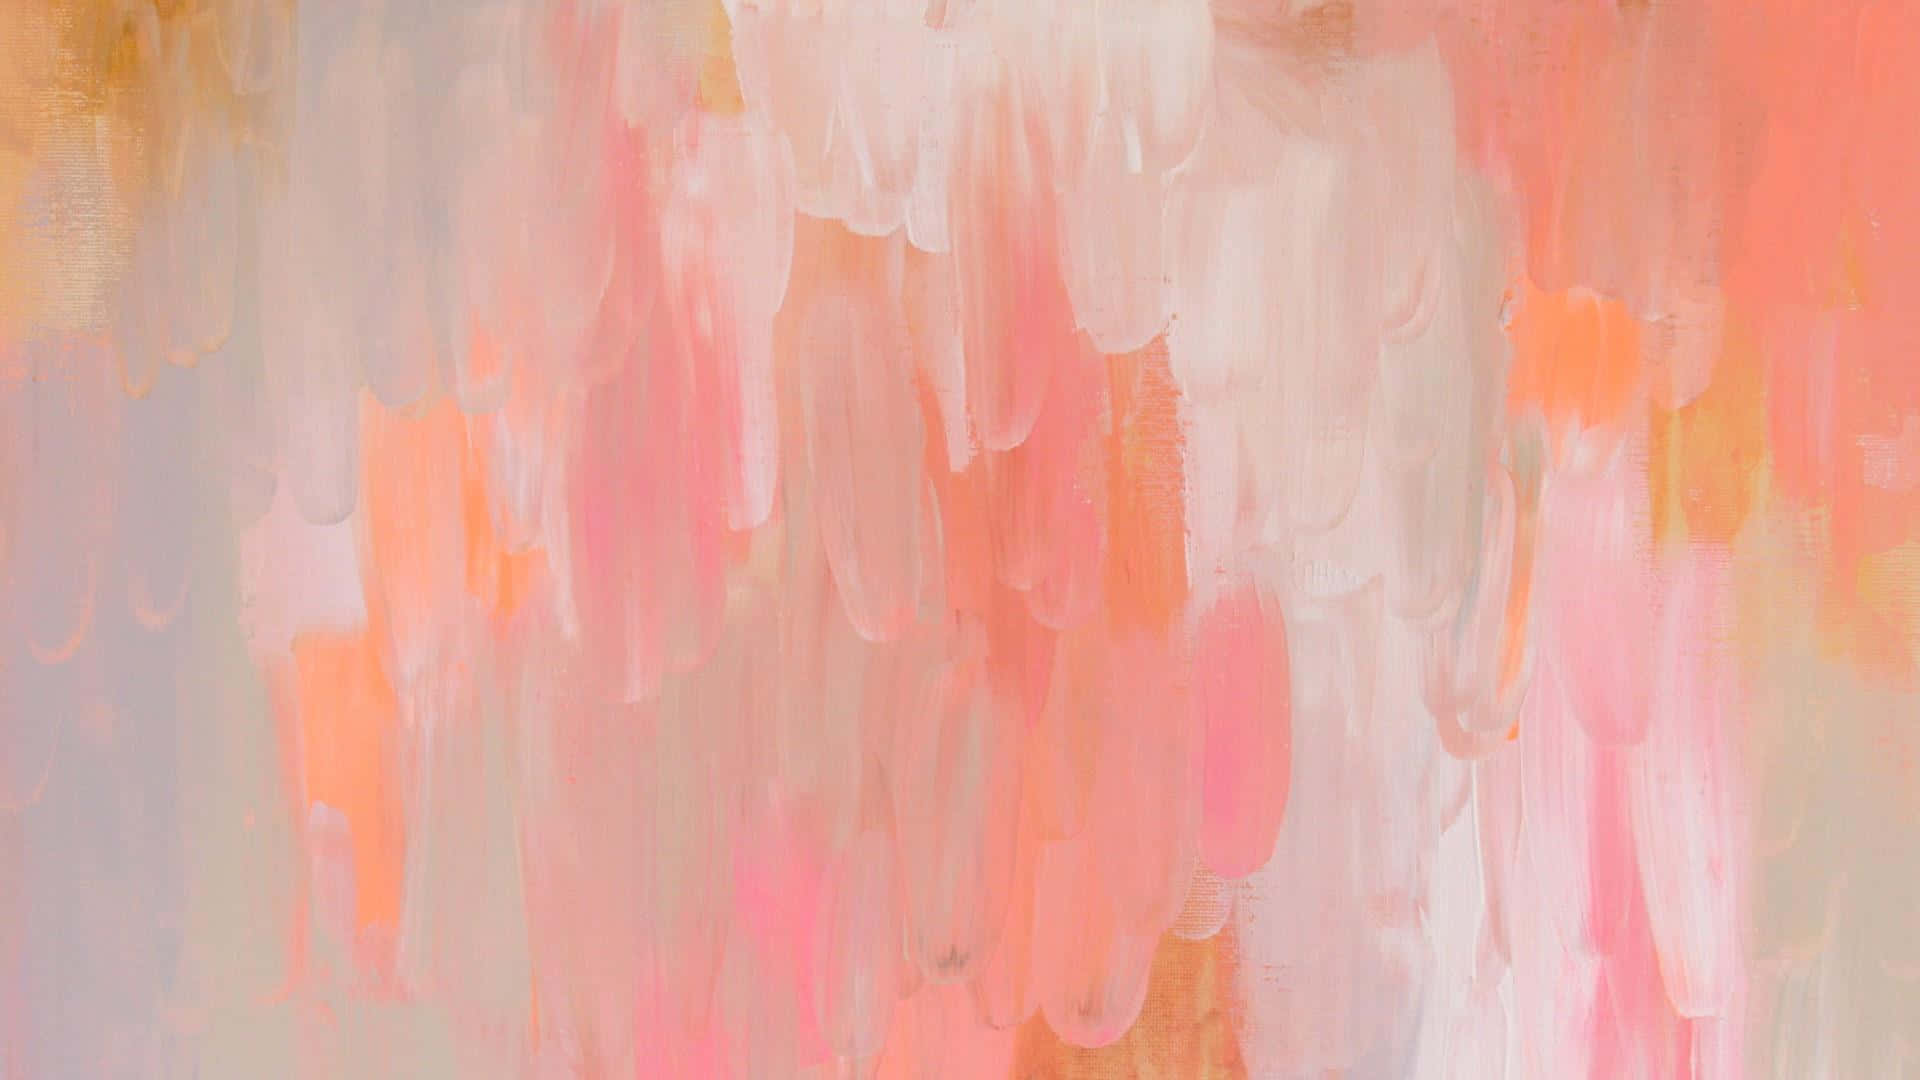 Abstrakt maling af en pink, orange og gul maleri